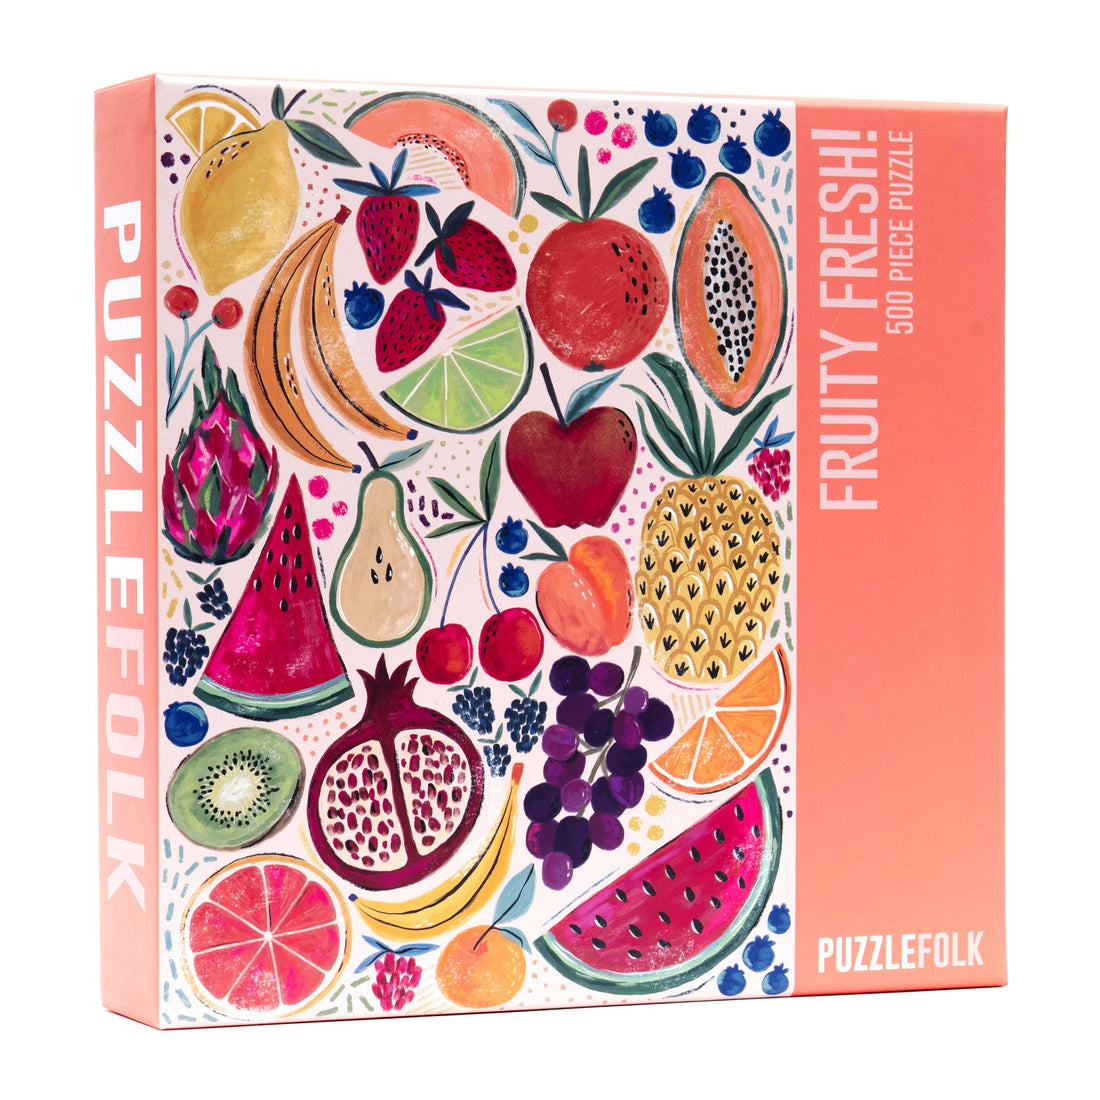 Fruity Fresh! 500 Piece Puzzle by Kenzie Elston